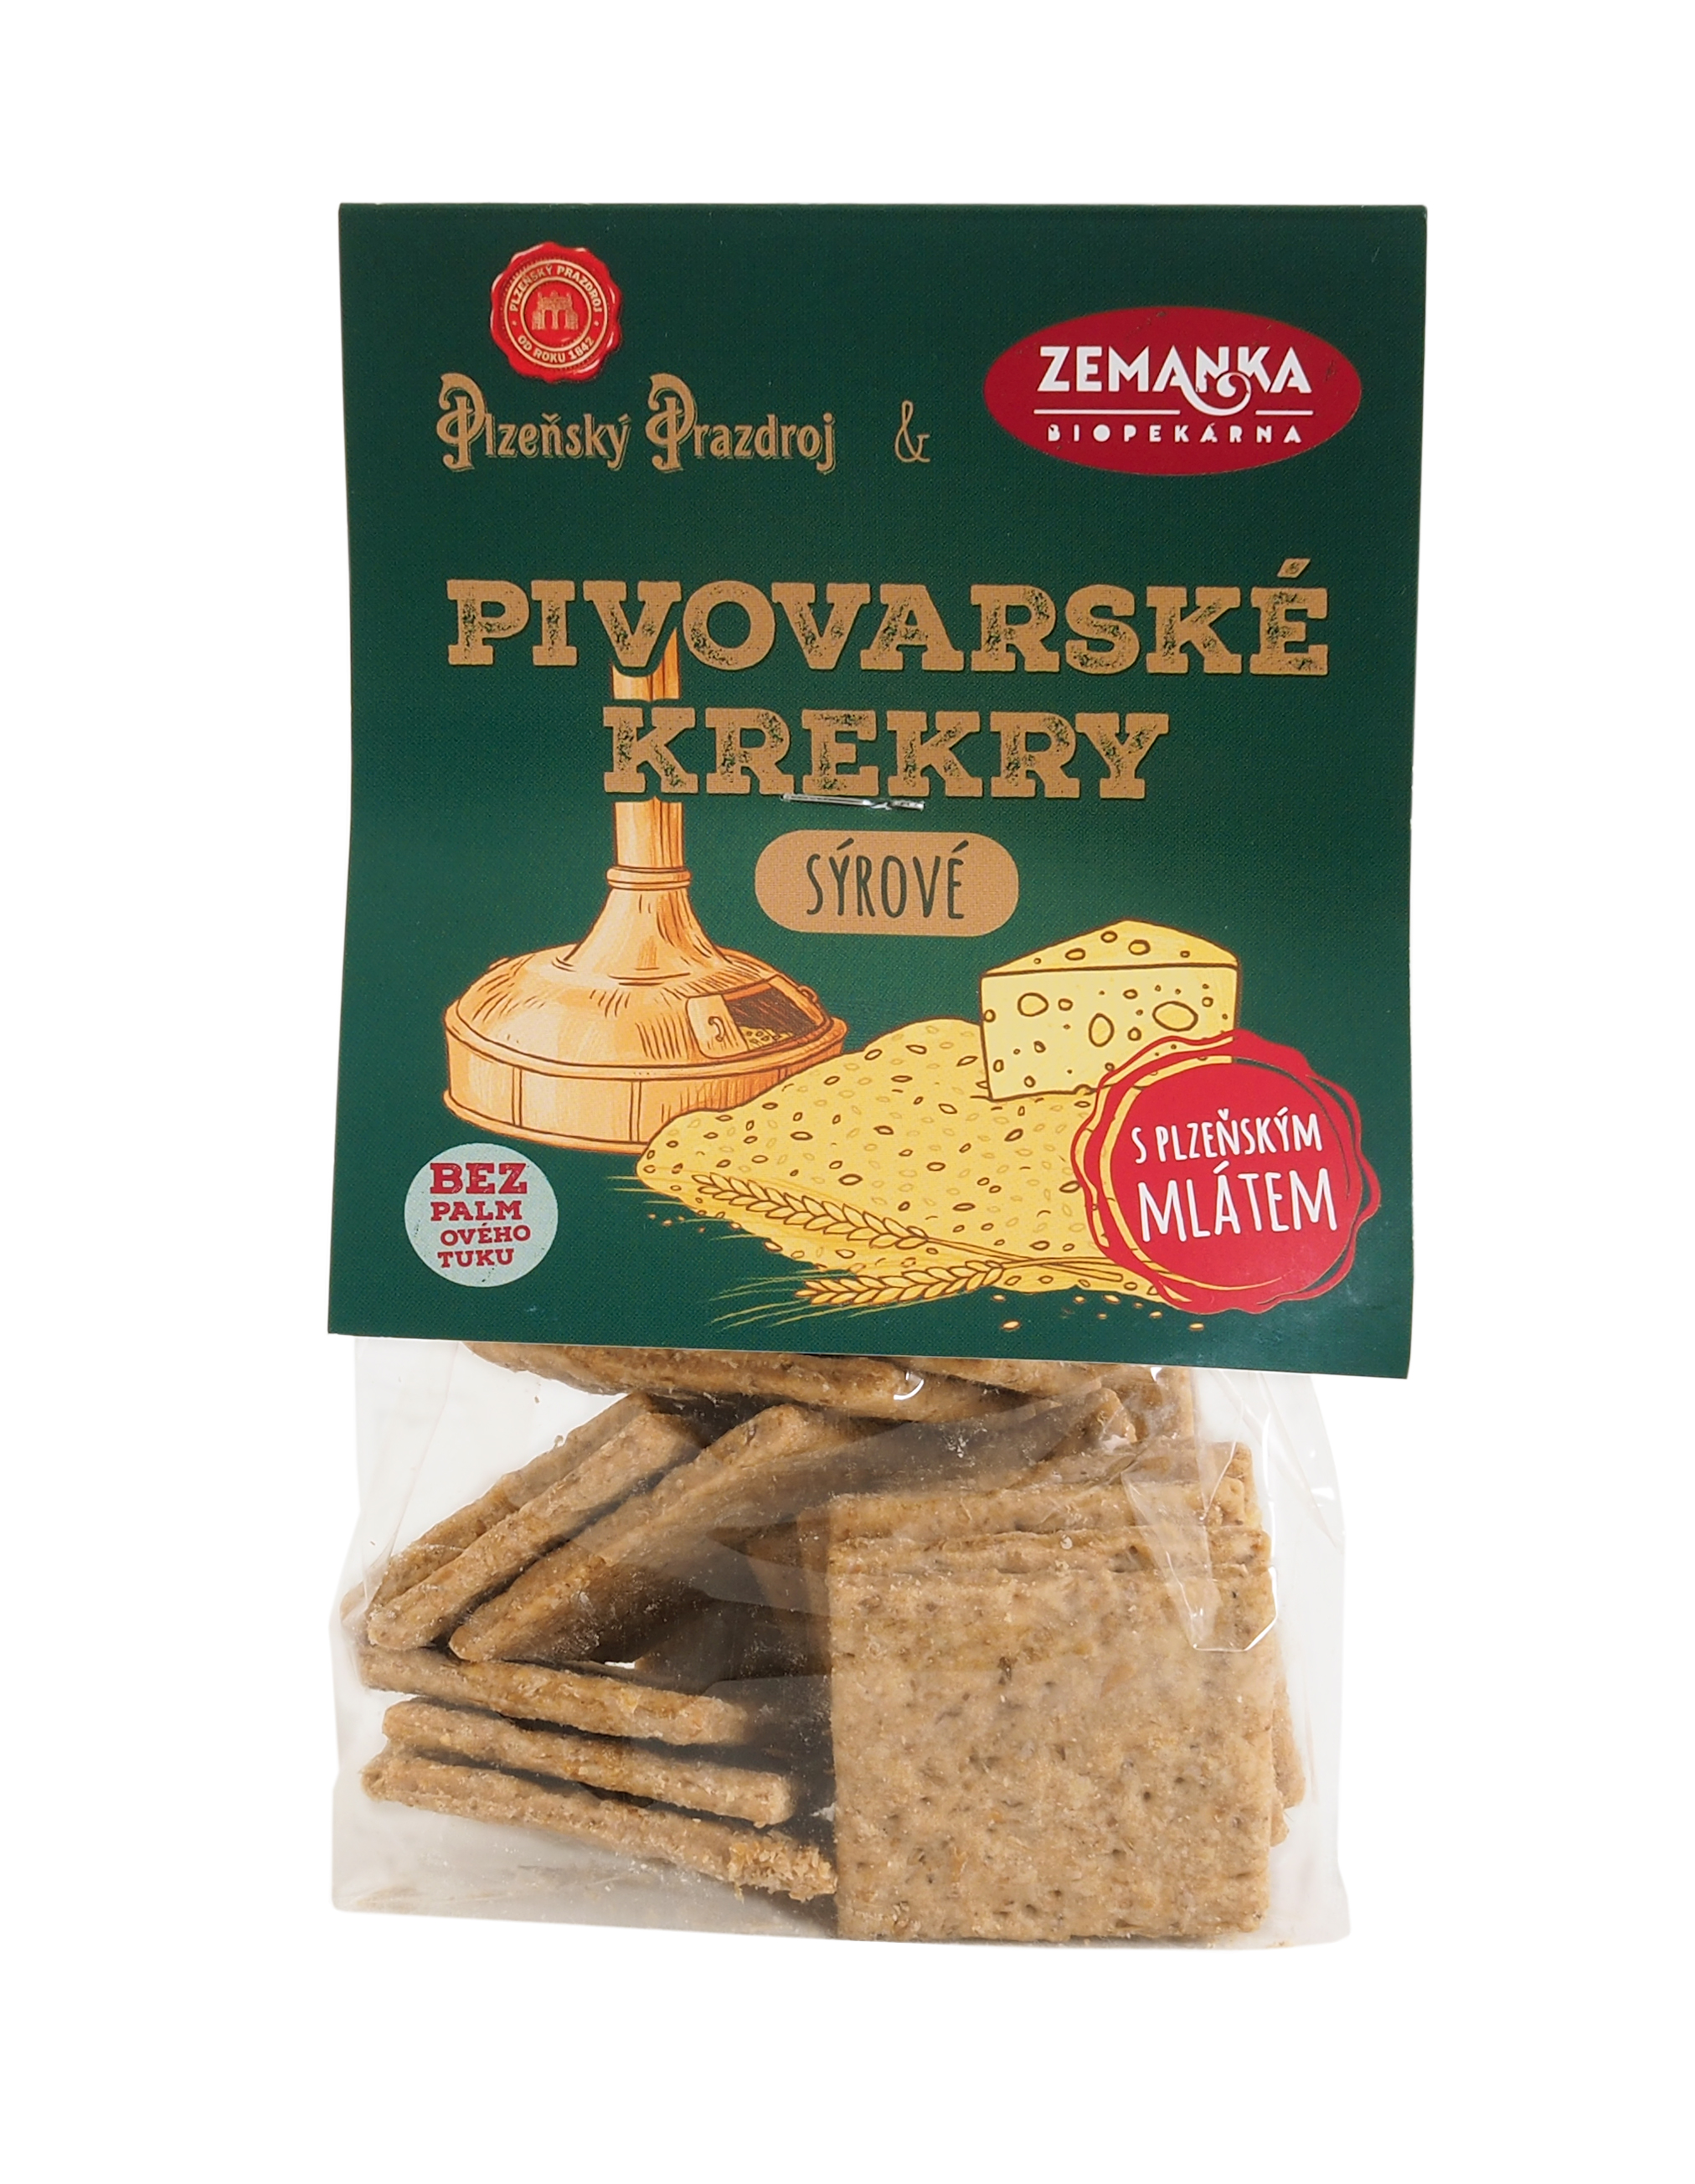 Salty crackers with Plzeňský Prazdroj malt and cheese